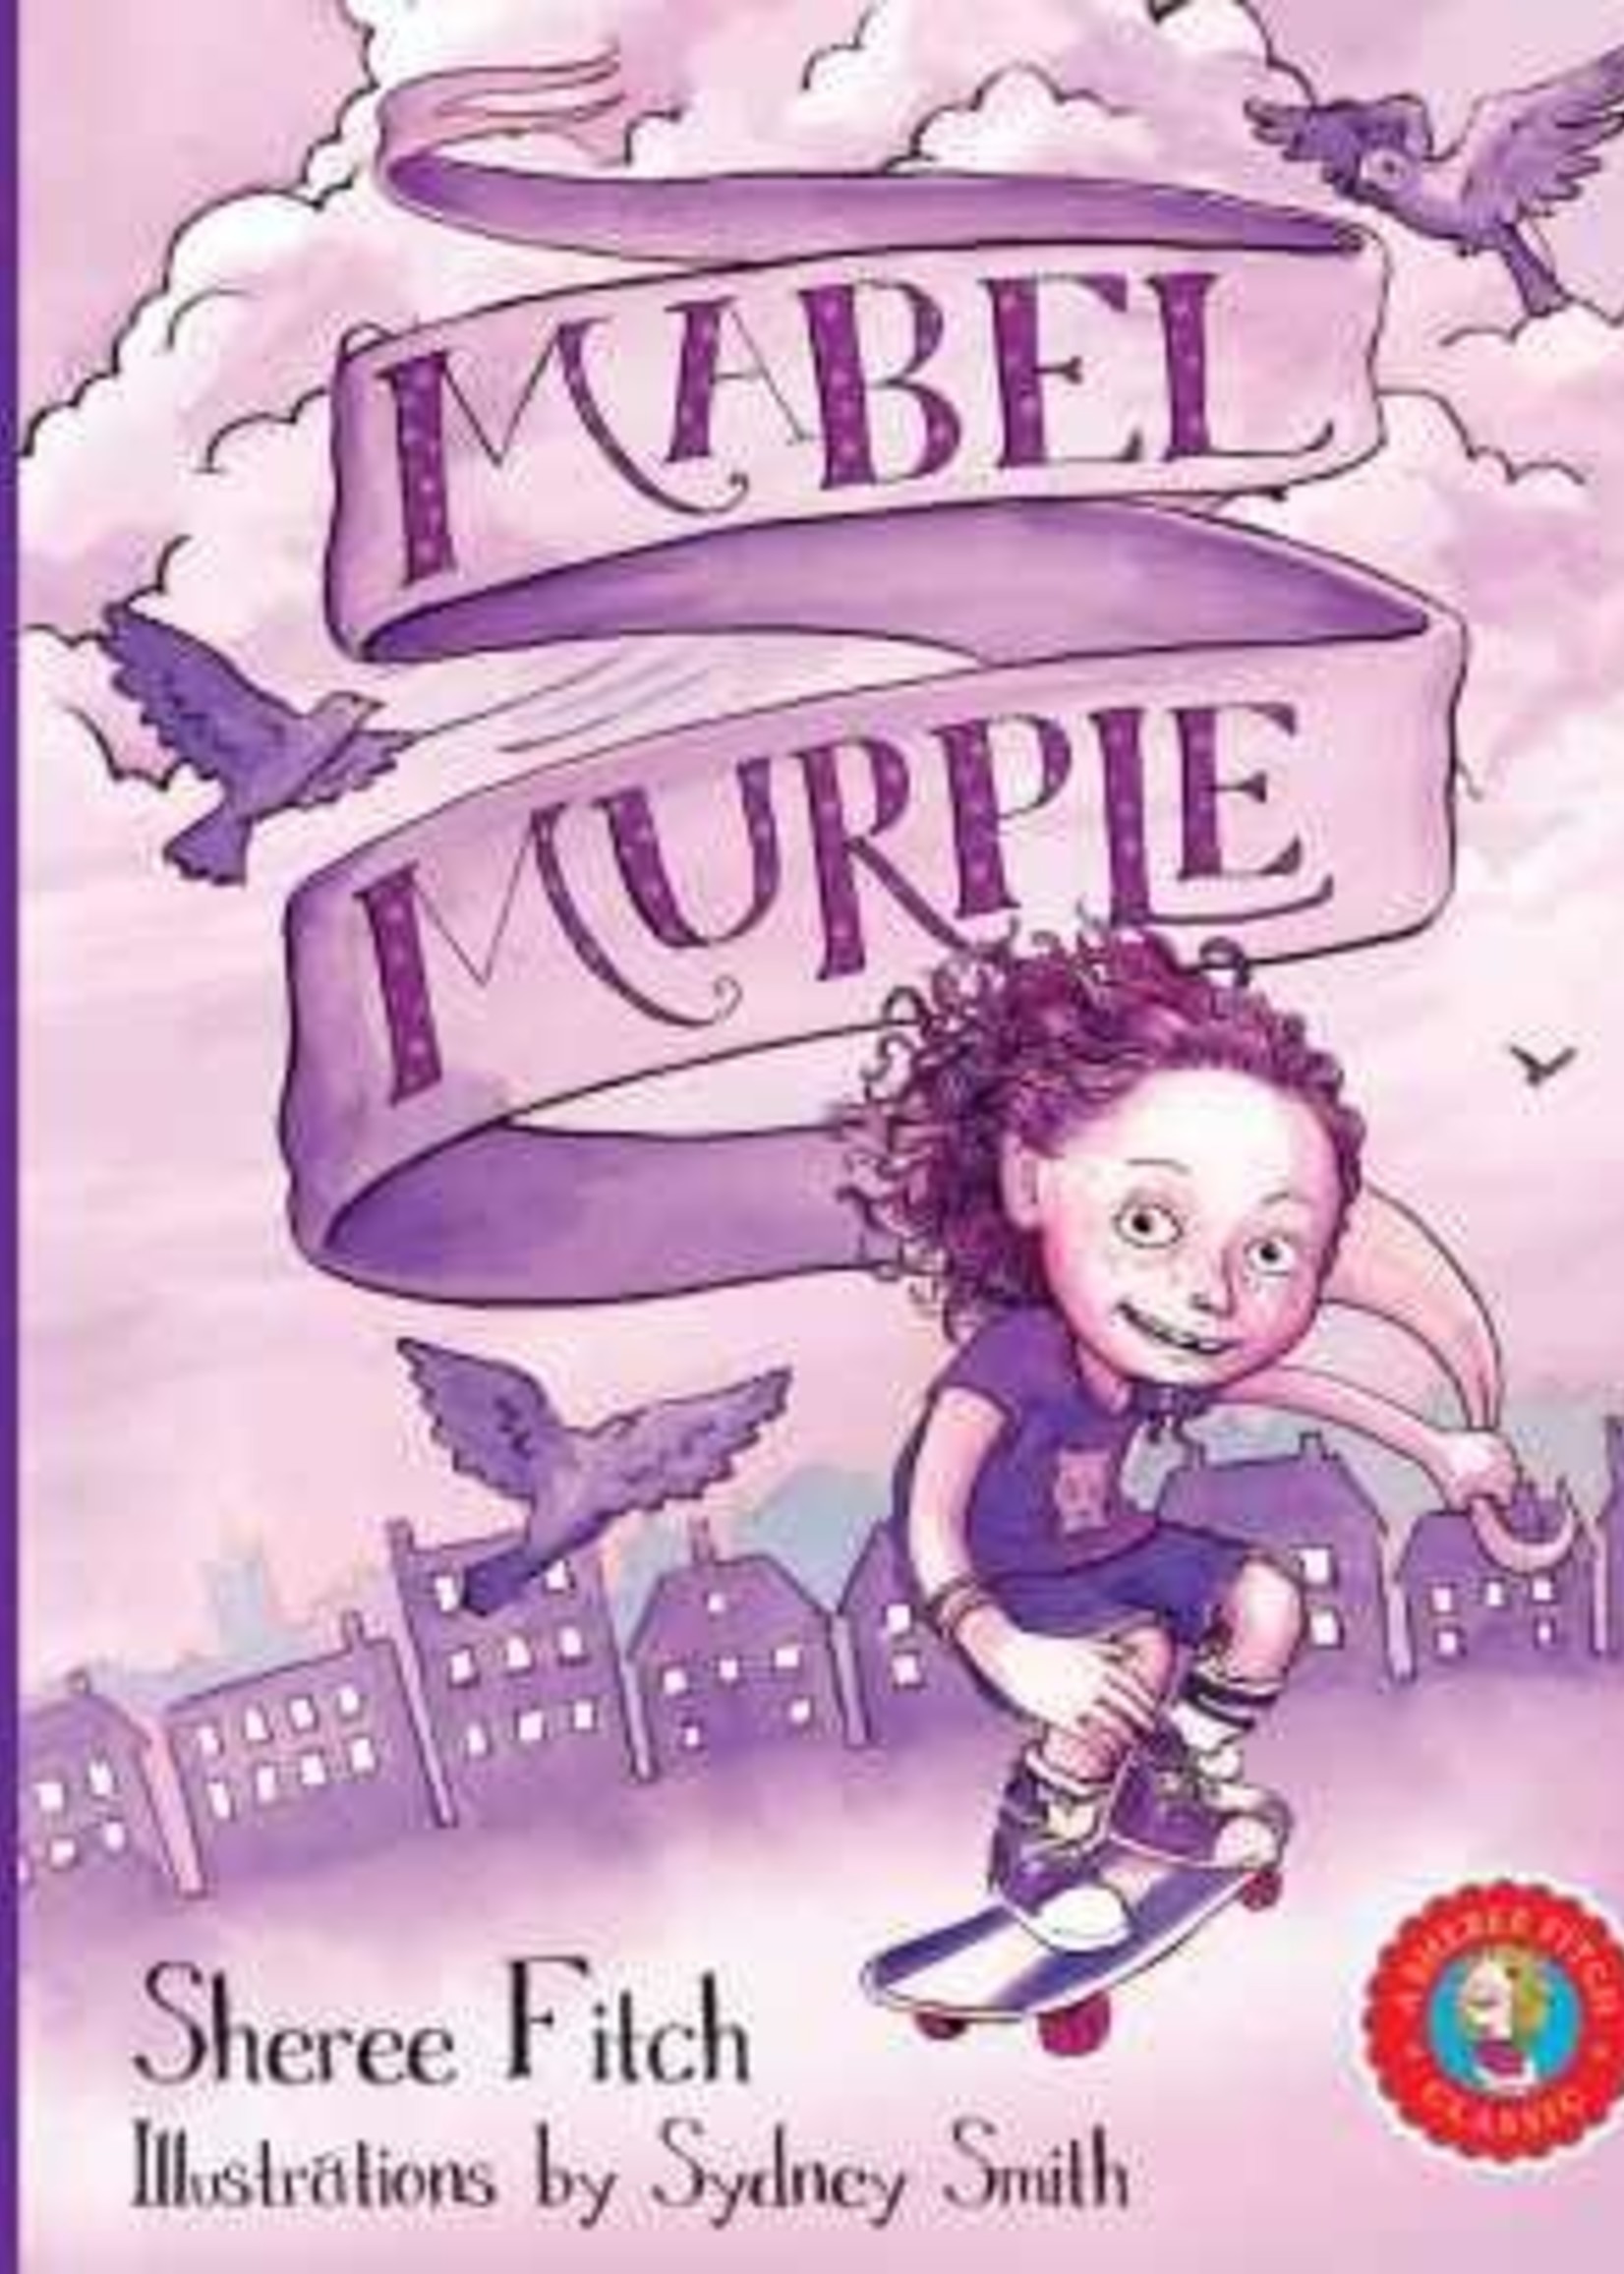 Mabel Murple by Sheree Fitch